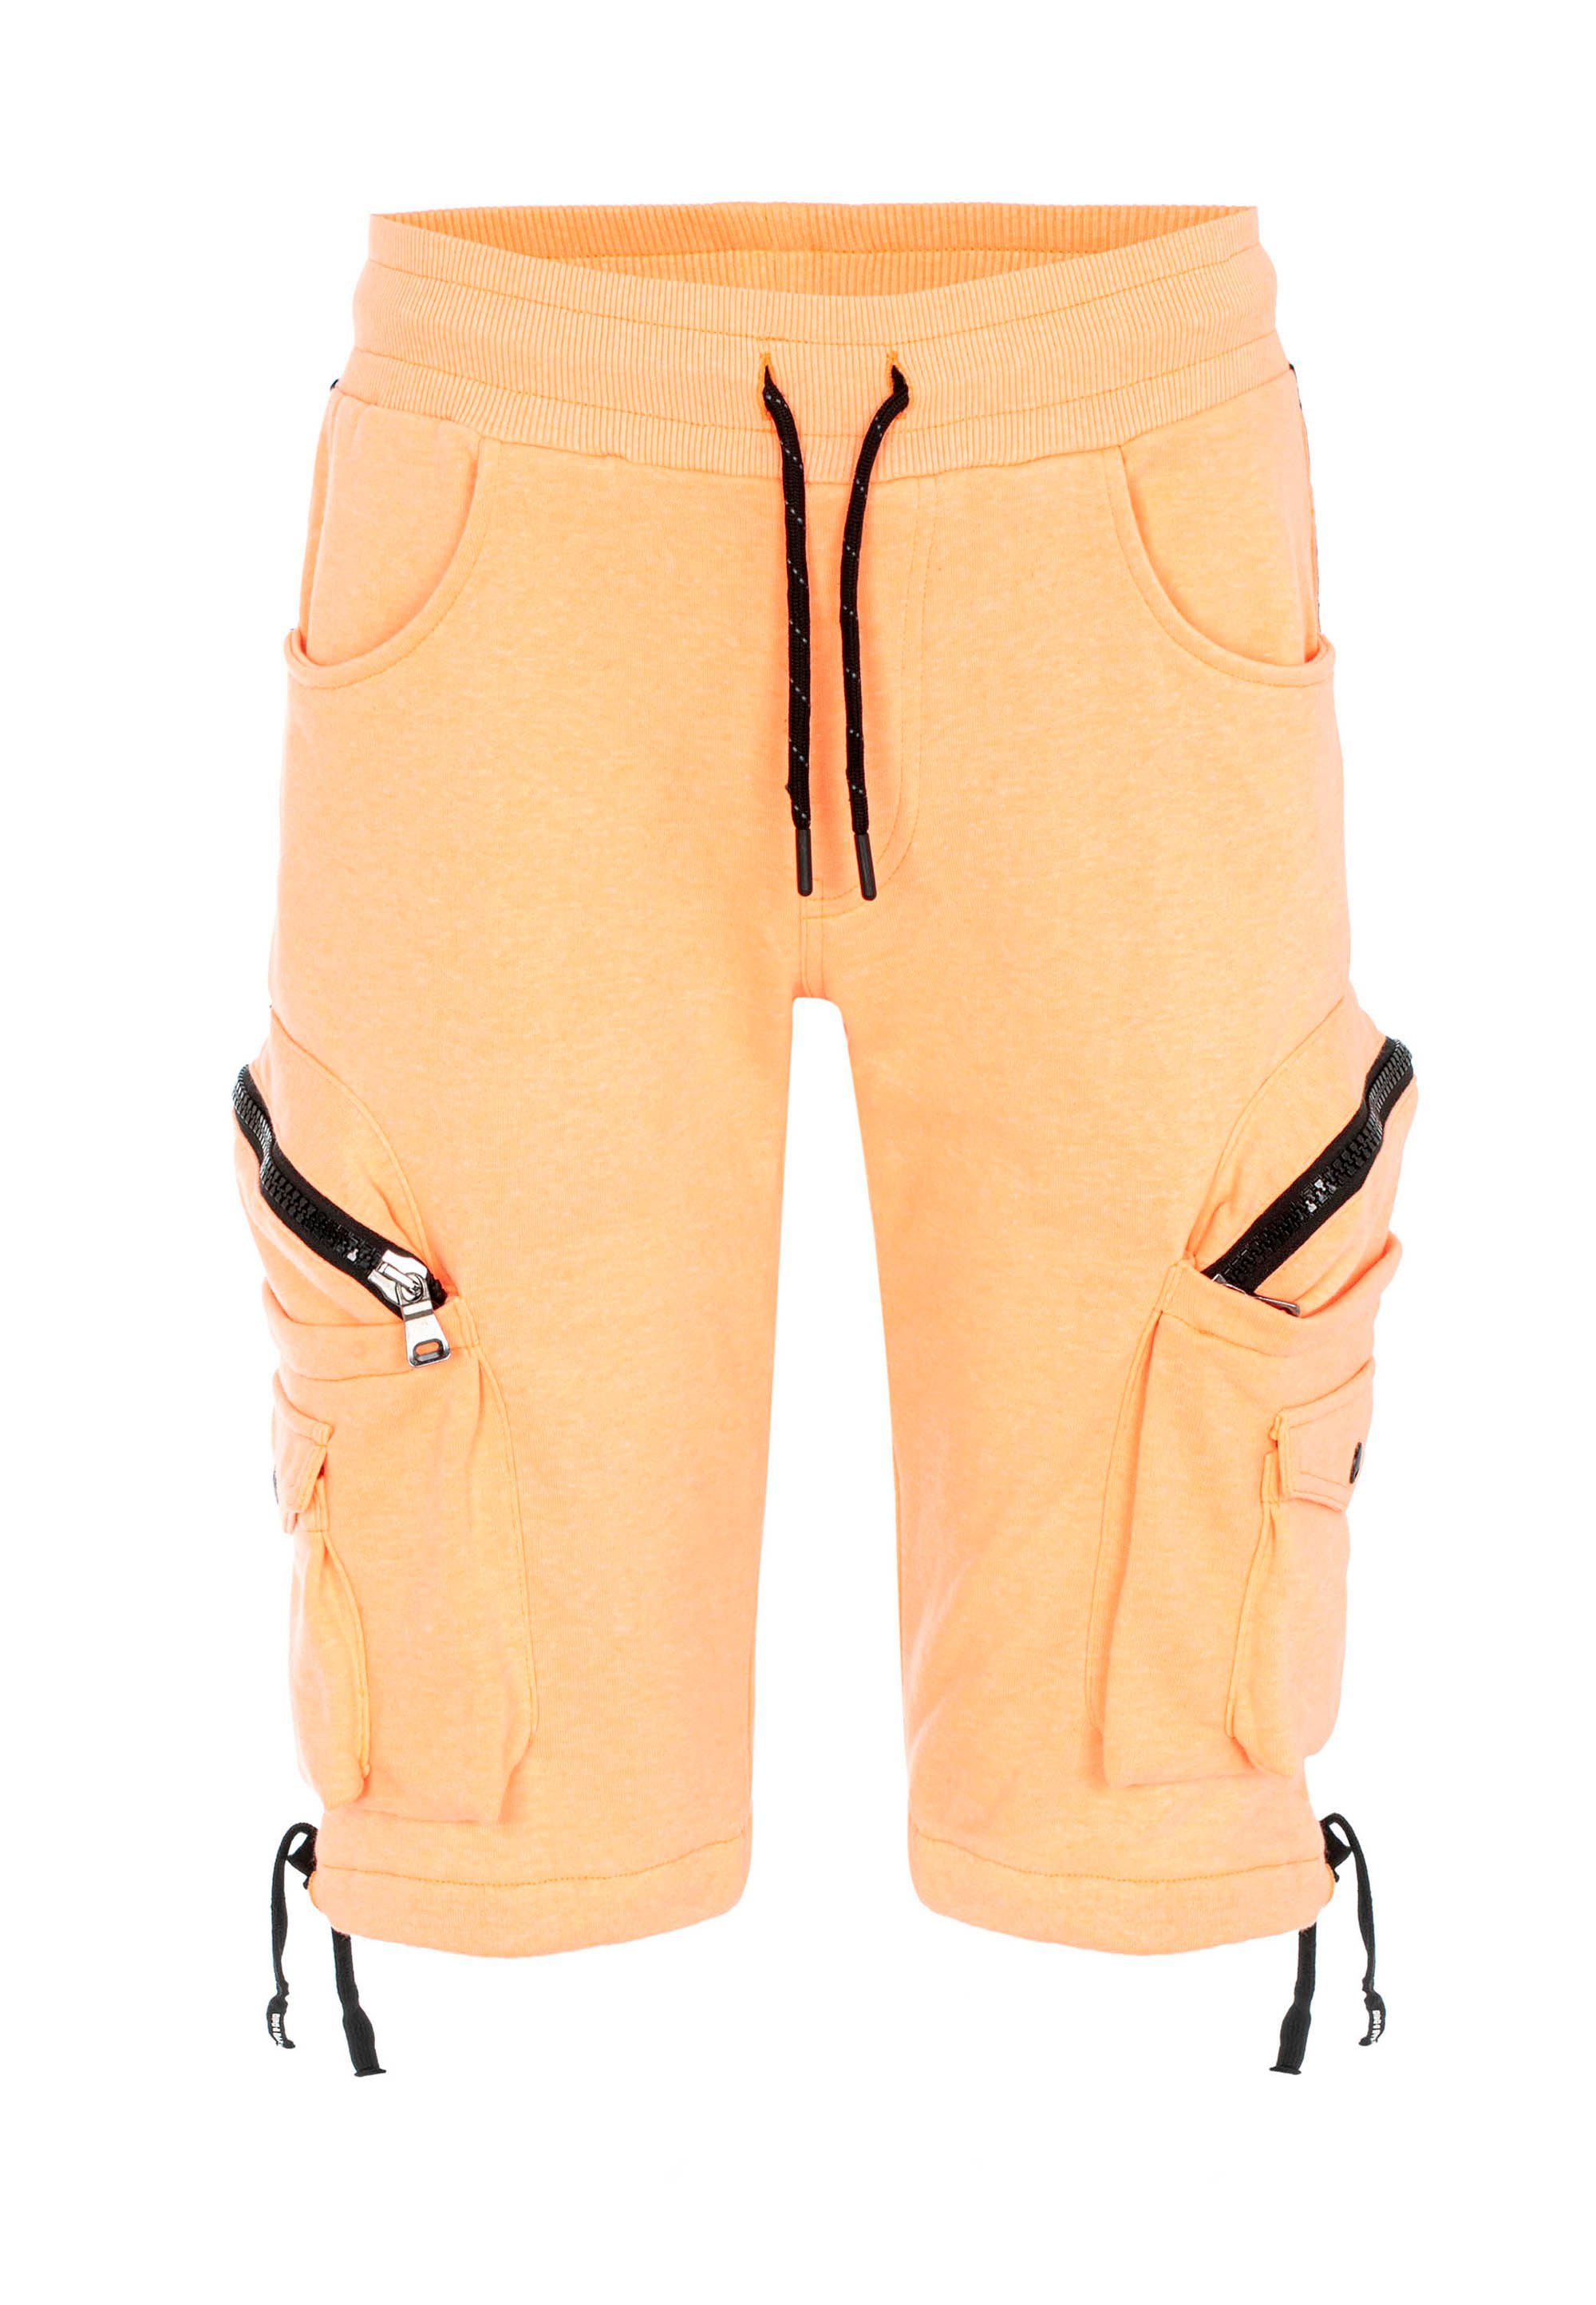 Baxx in Look orange CK225 Cipo Shorts & sportlichem